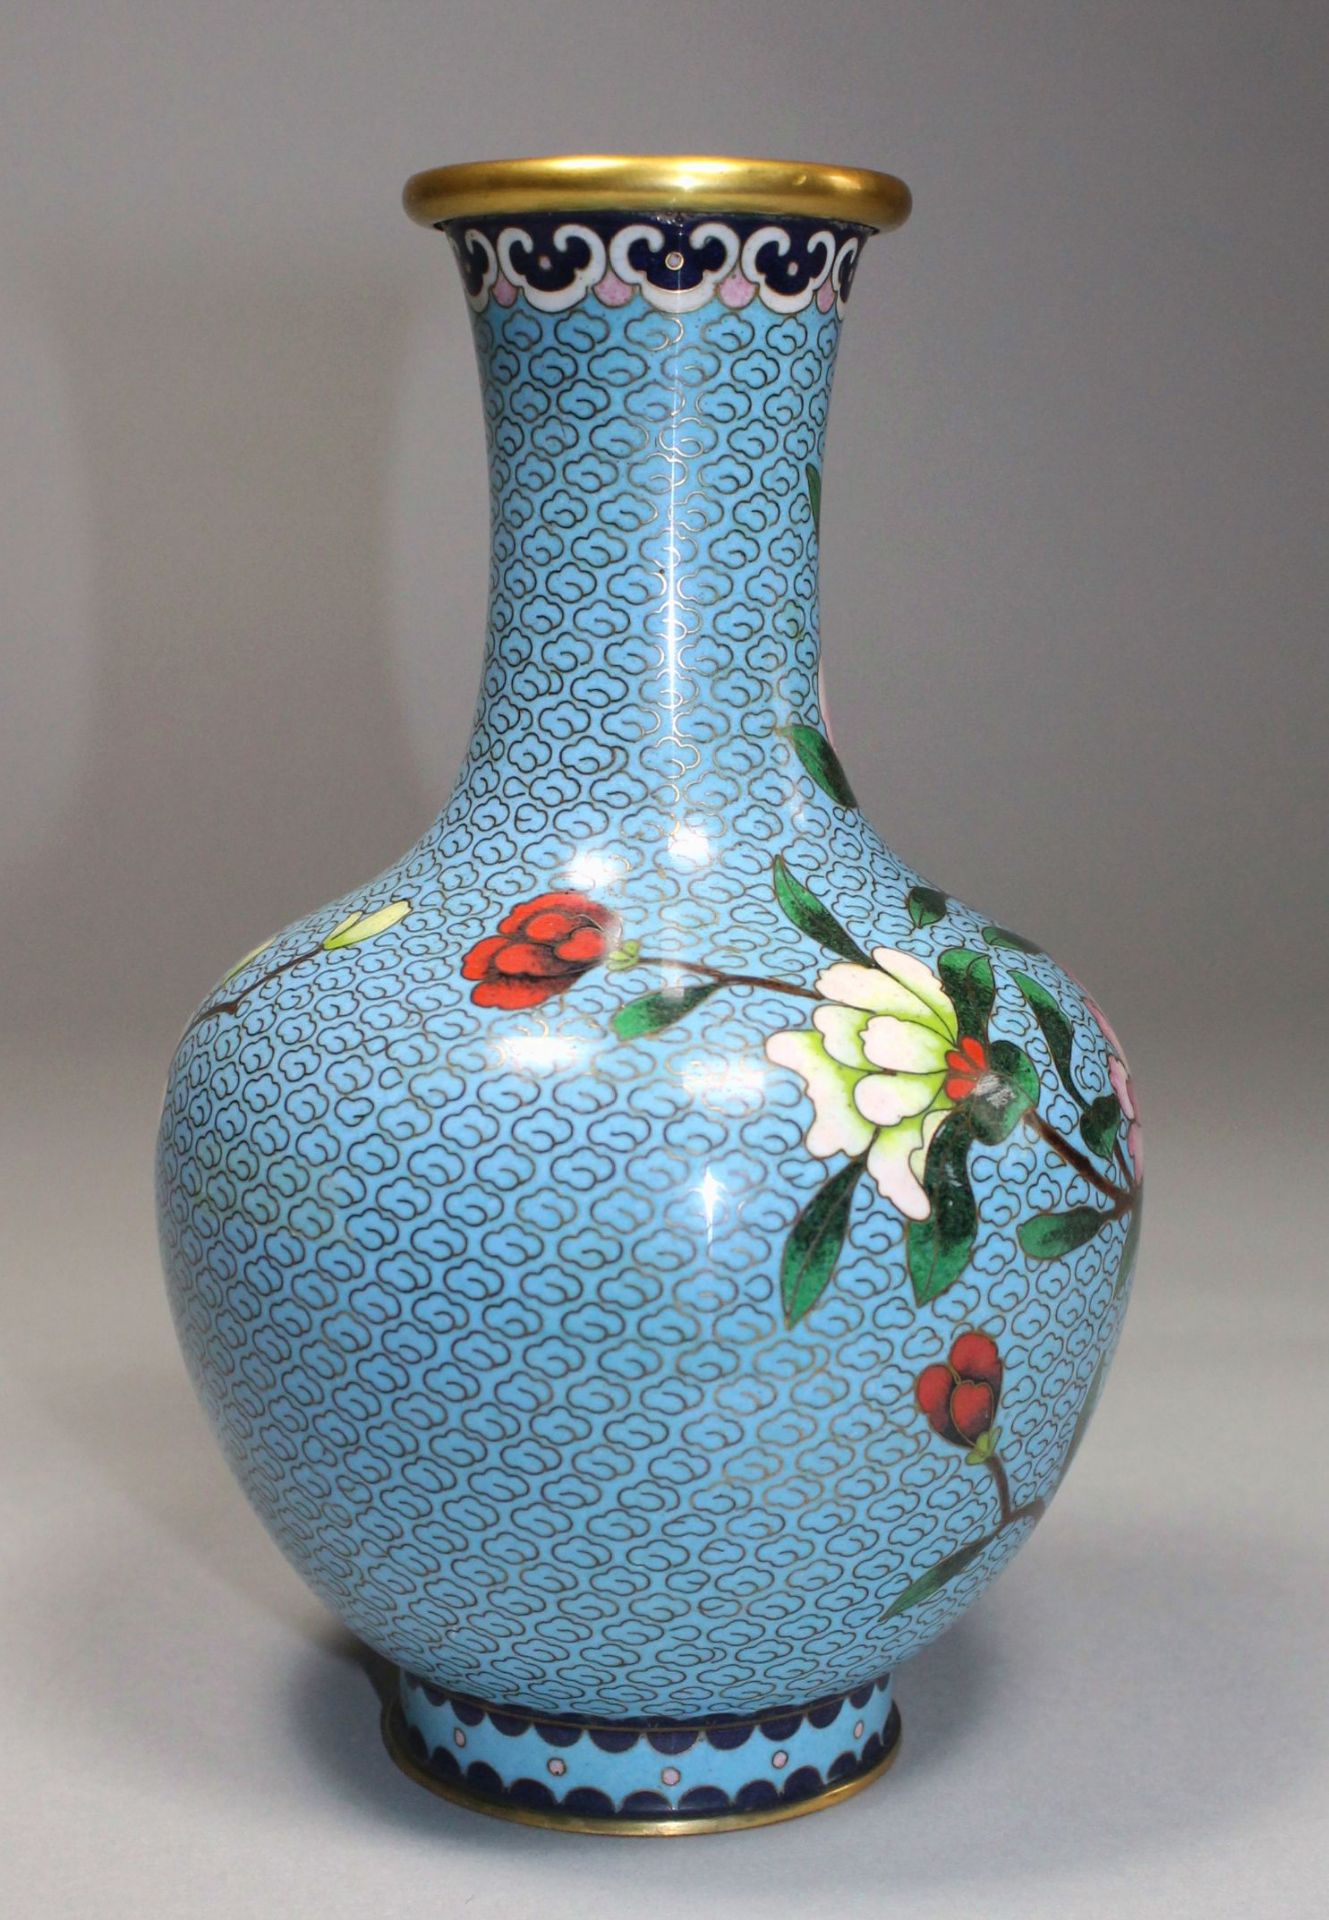 1 Cloisonné-Vase Messing/Emaille, polychromer floraler Dekor auf hellblauem Untergrund, eingezogener - Bild 3 aus 4